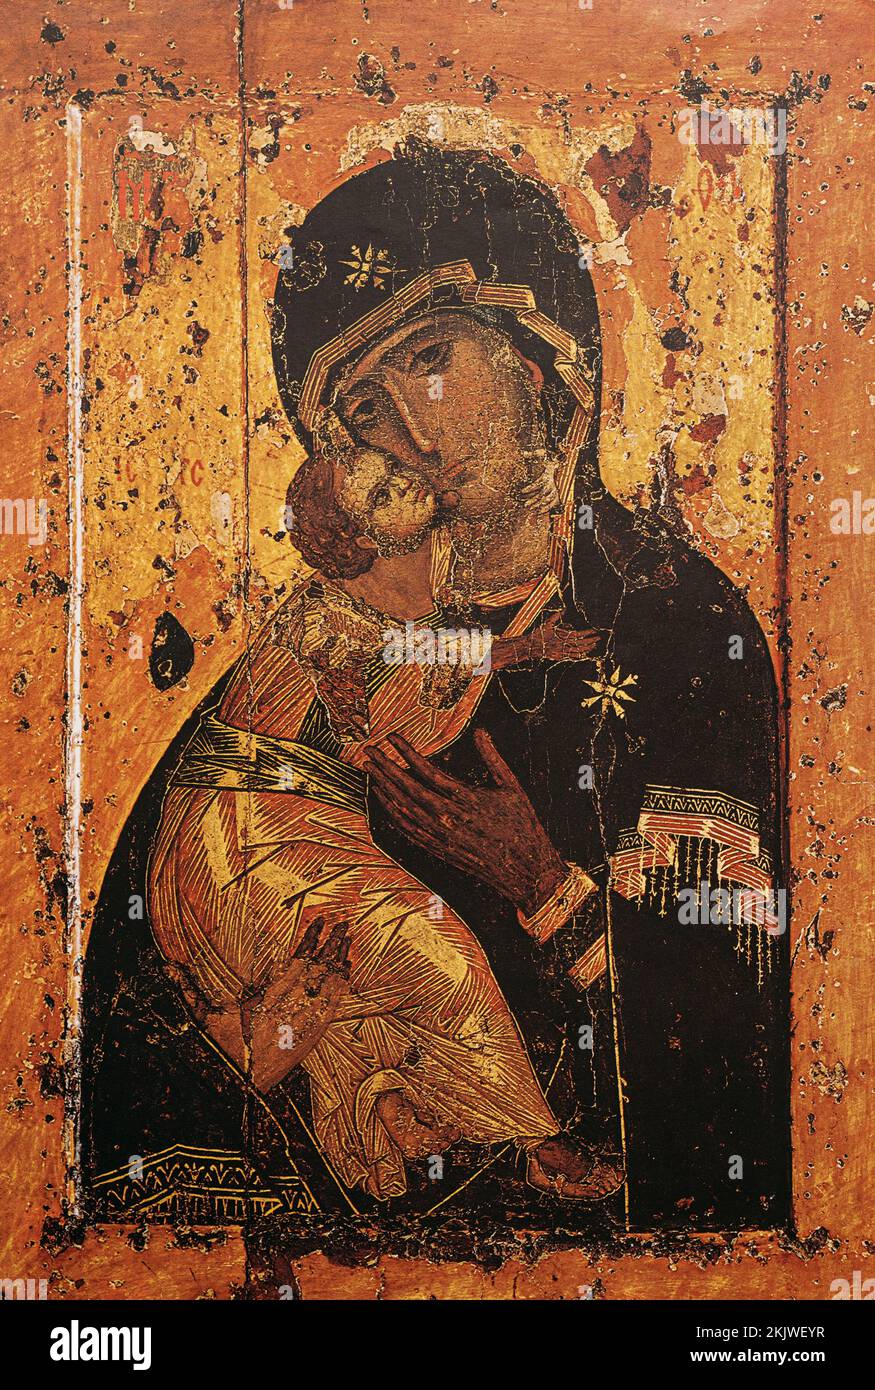 Die Jungfrau von Wladimir, auch bekannt als Wladimir Mutter Gottes, und Theotokos von Wladimir, ist Eine byzantinische Ikone aus dem 12.. Jahrhundert. Ist Eine Der Kulturell Bedeutendsten Stockfoto